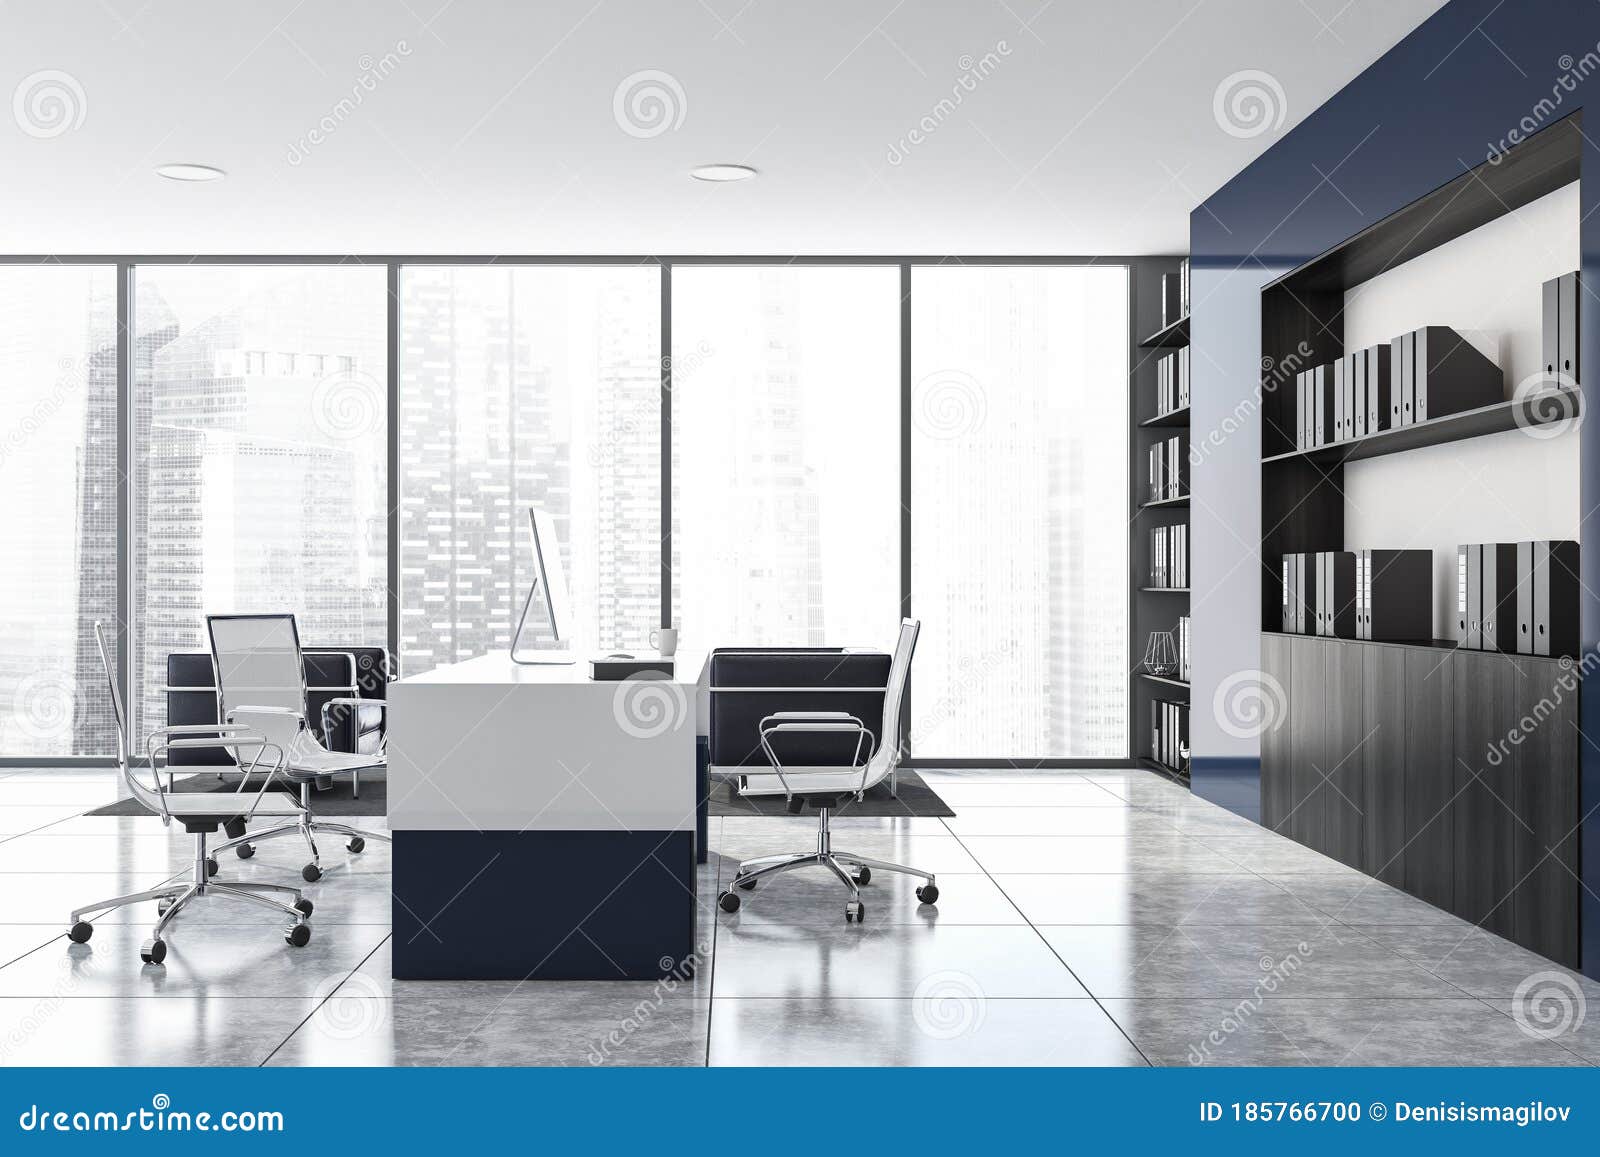 Mơ ước của bạn là có một văn phòng sang trọng và chuyên nghiệp như CEO? Hãy xem hình ảnh về văn phòng CEO màu trắng và xanh của chúng tôi để có được gợi ý tuyệt vời cho sự trang trí và bố trí văn phòng của riêng bạn.